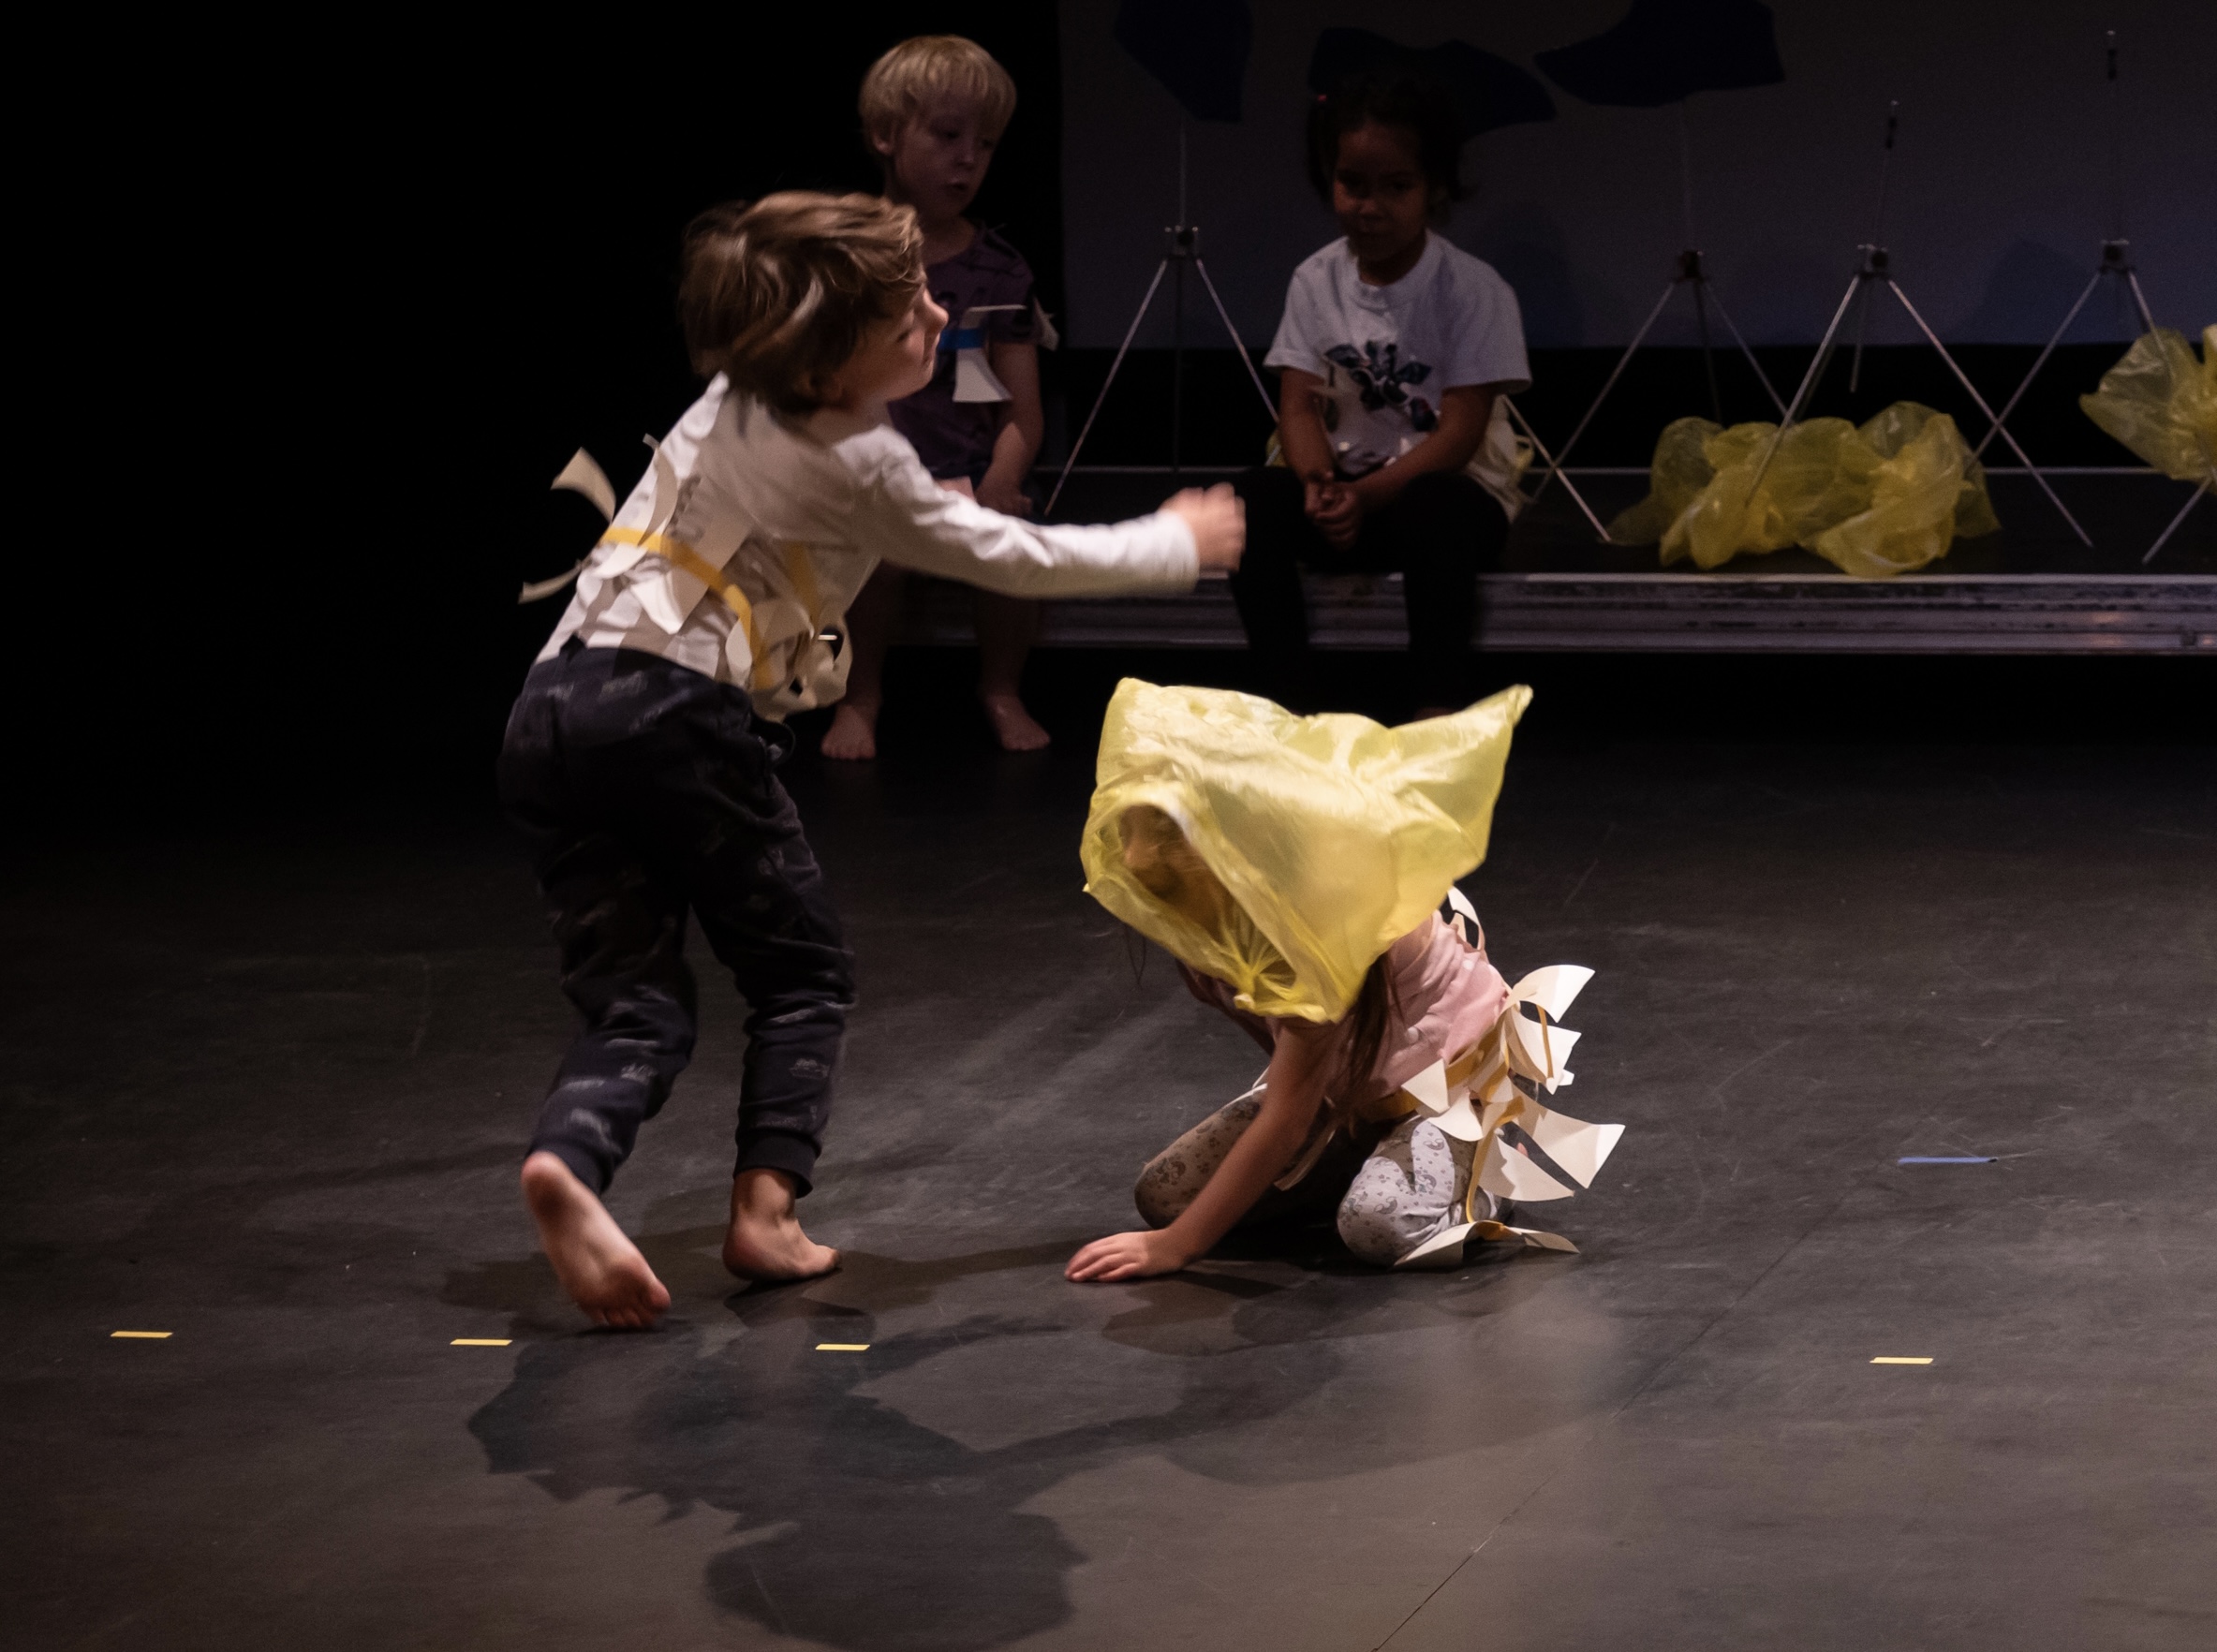 zwei kinder auf der Bühne mit weißem oberteil und einer gelben Tüte in der Hand bewegen sich. Ein kind hält die Arme auseinander, das andere ist auf allen vieren am Boden